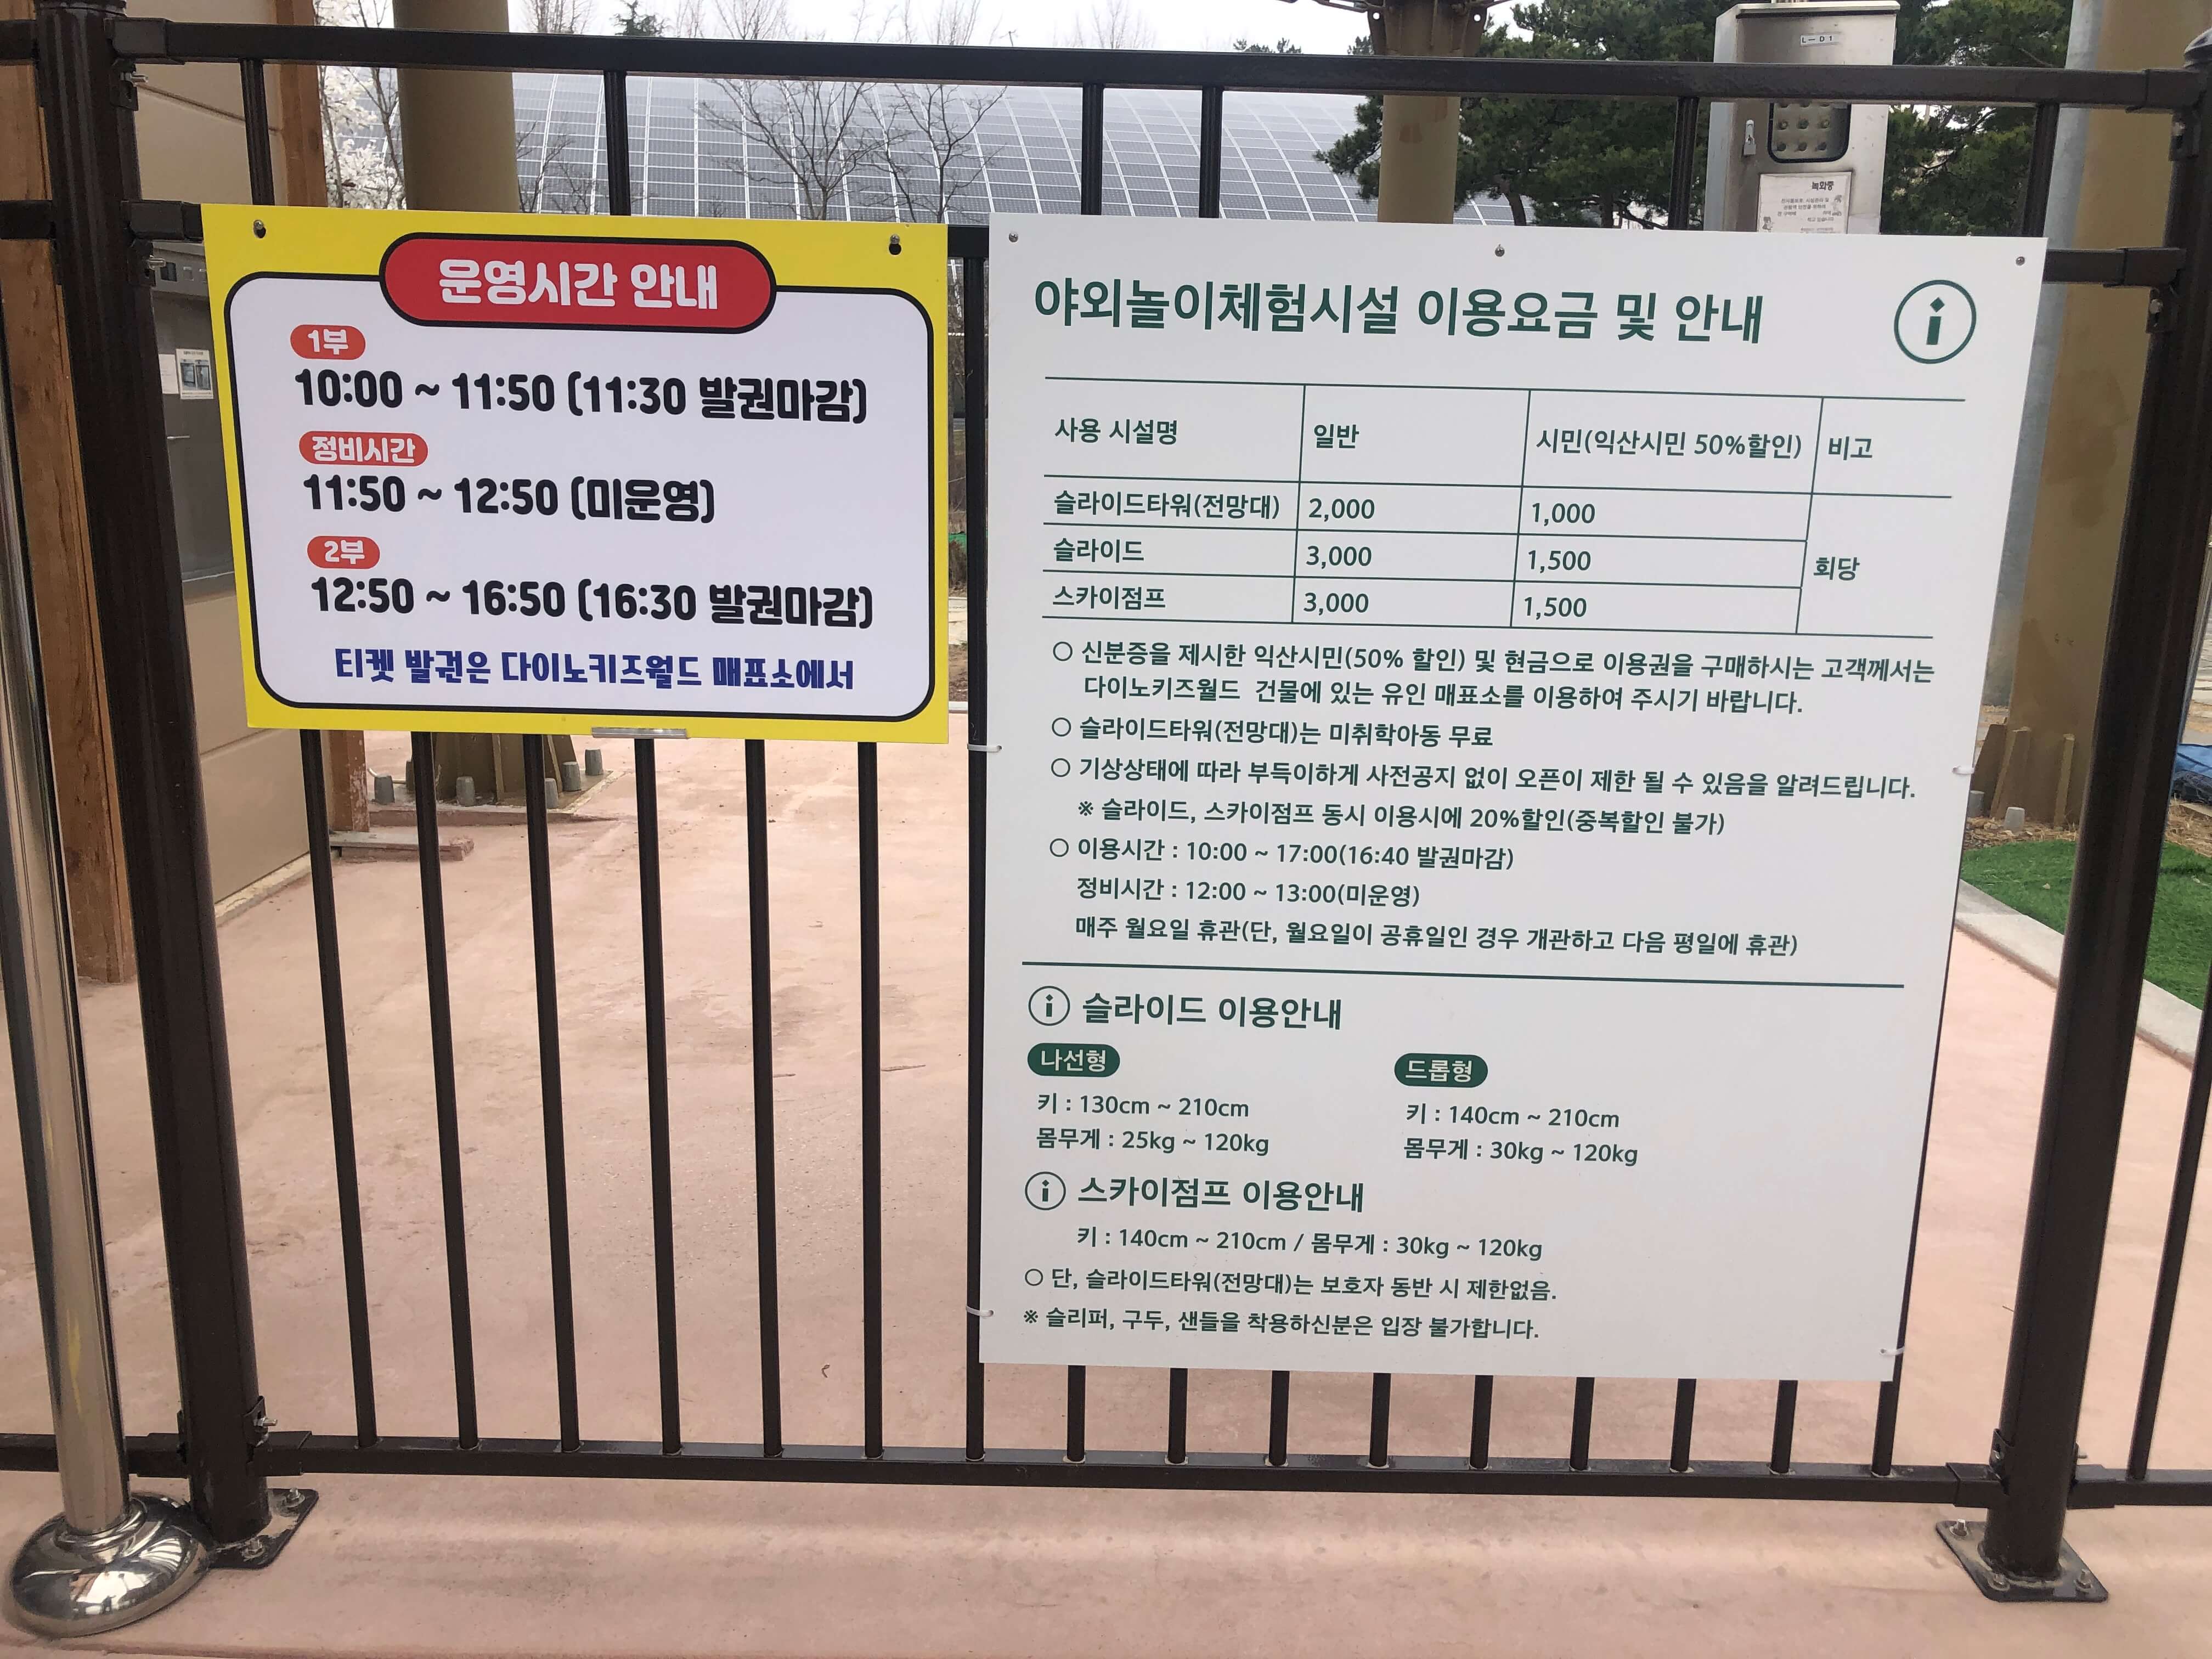 민수랜드-익산공룡테마공원 슬라이드 운영시간